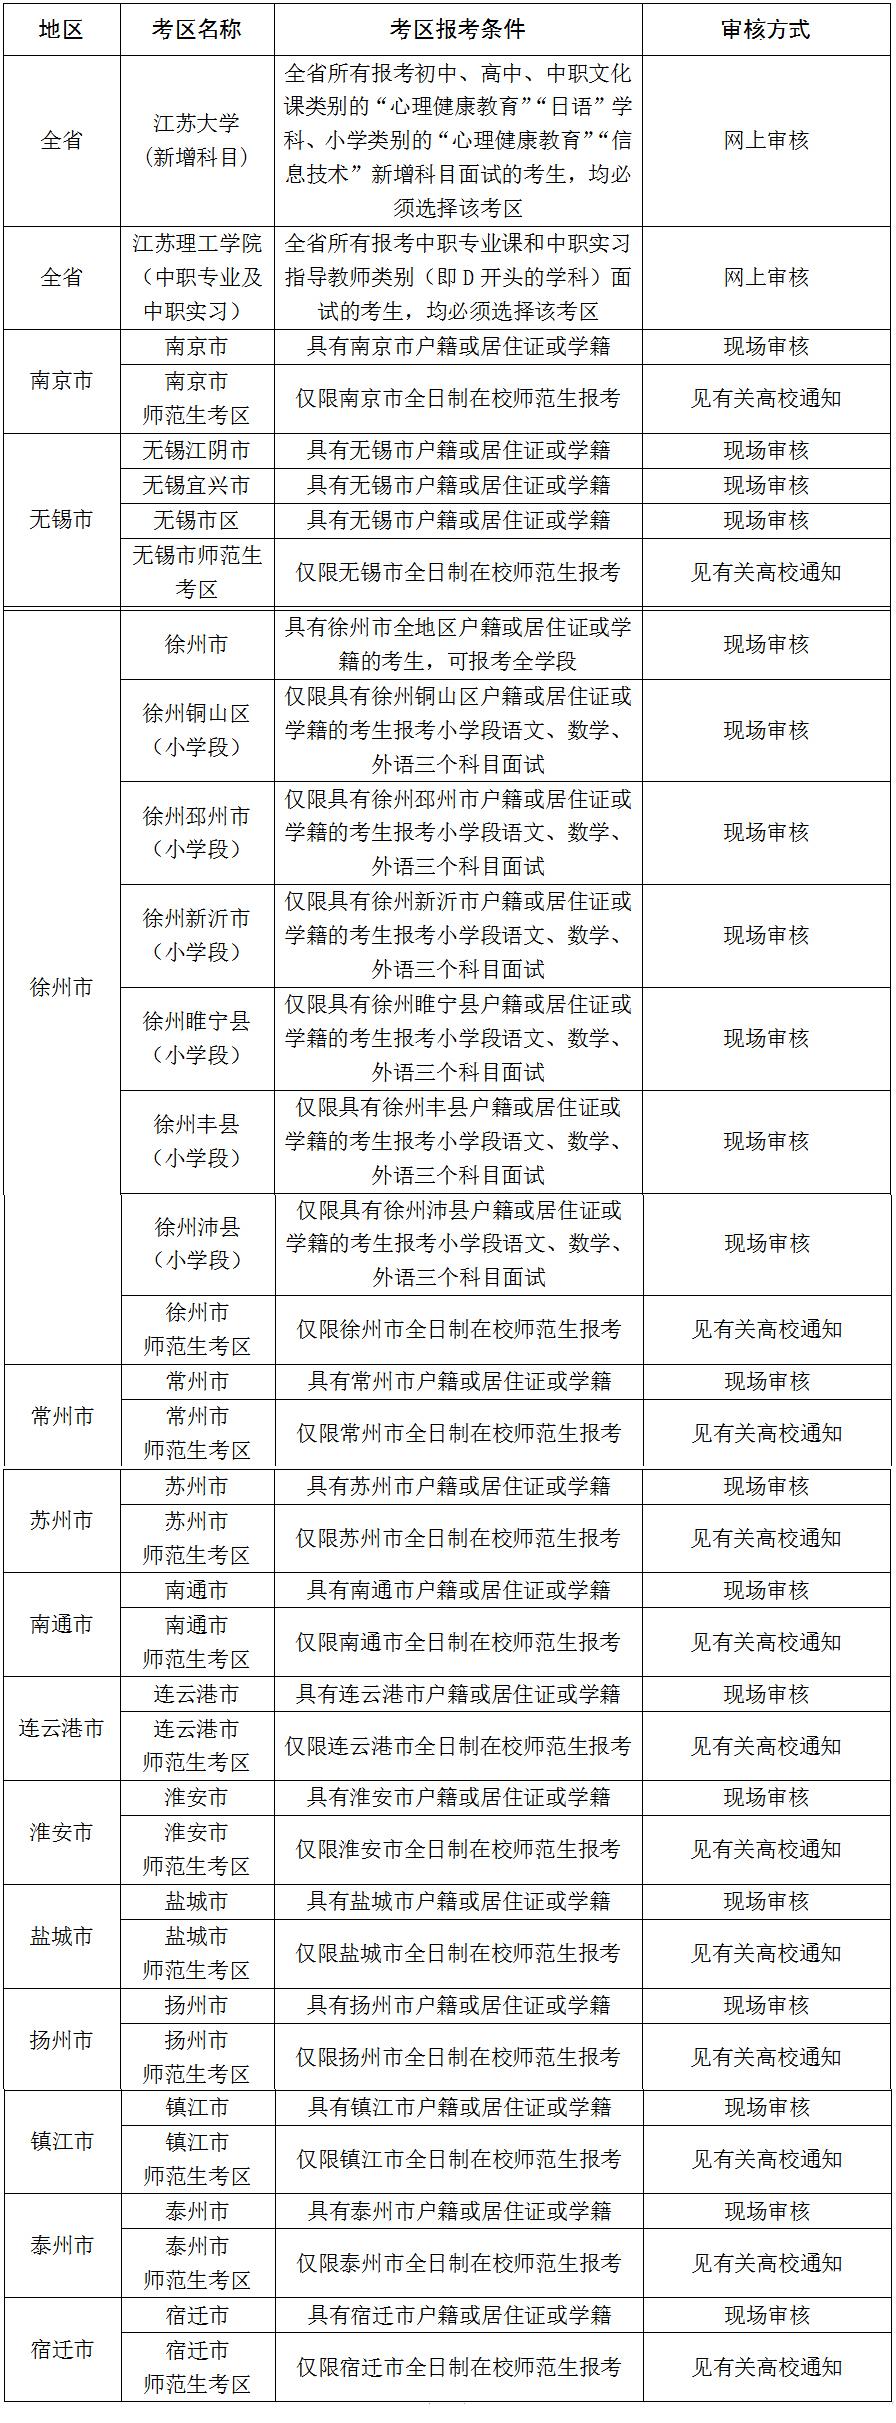 江苏省2020年下半年教师资格考试面试报名公告